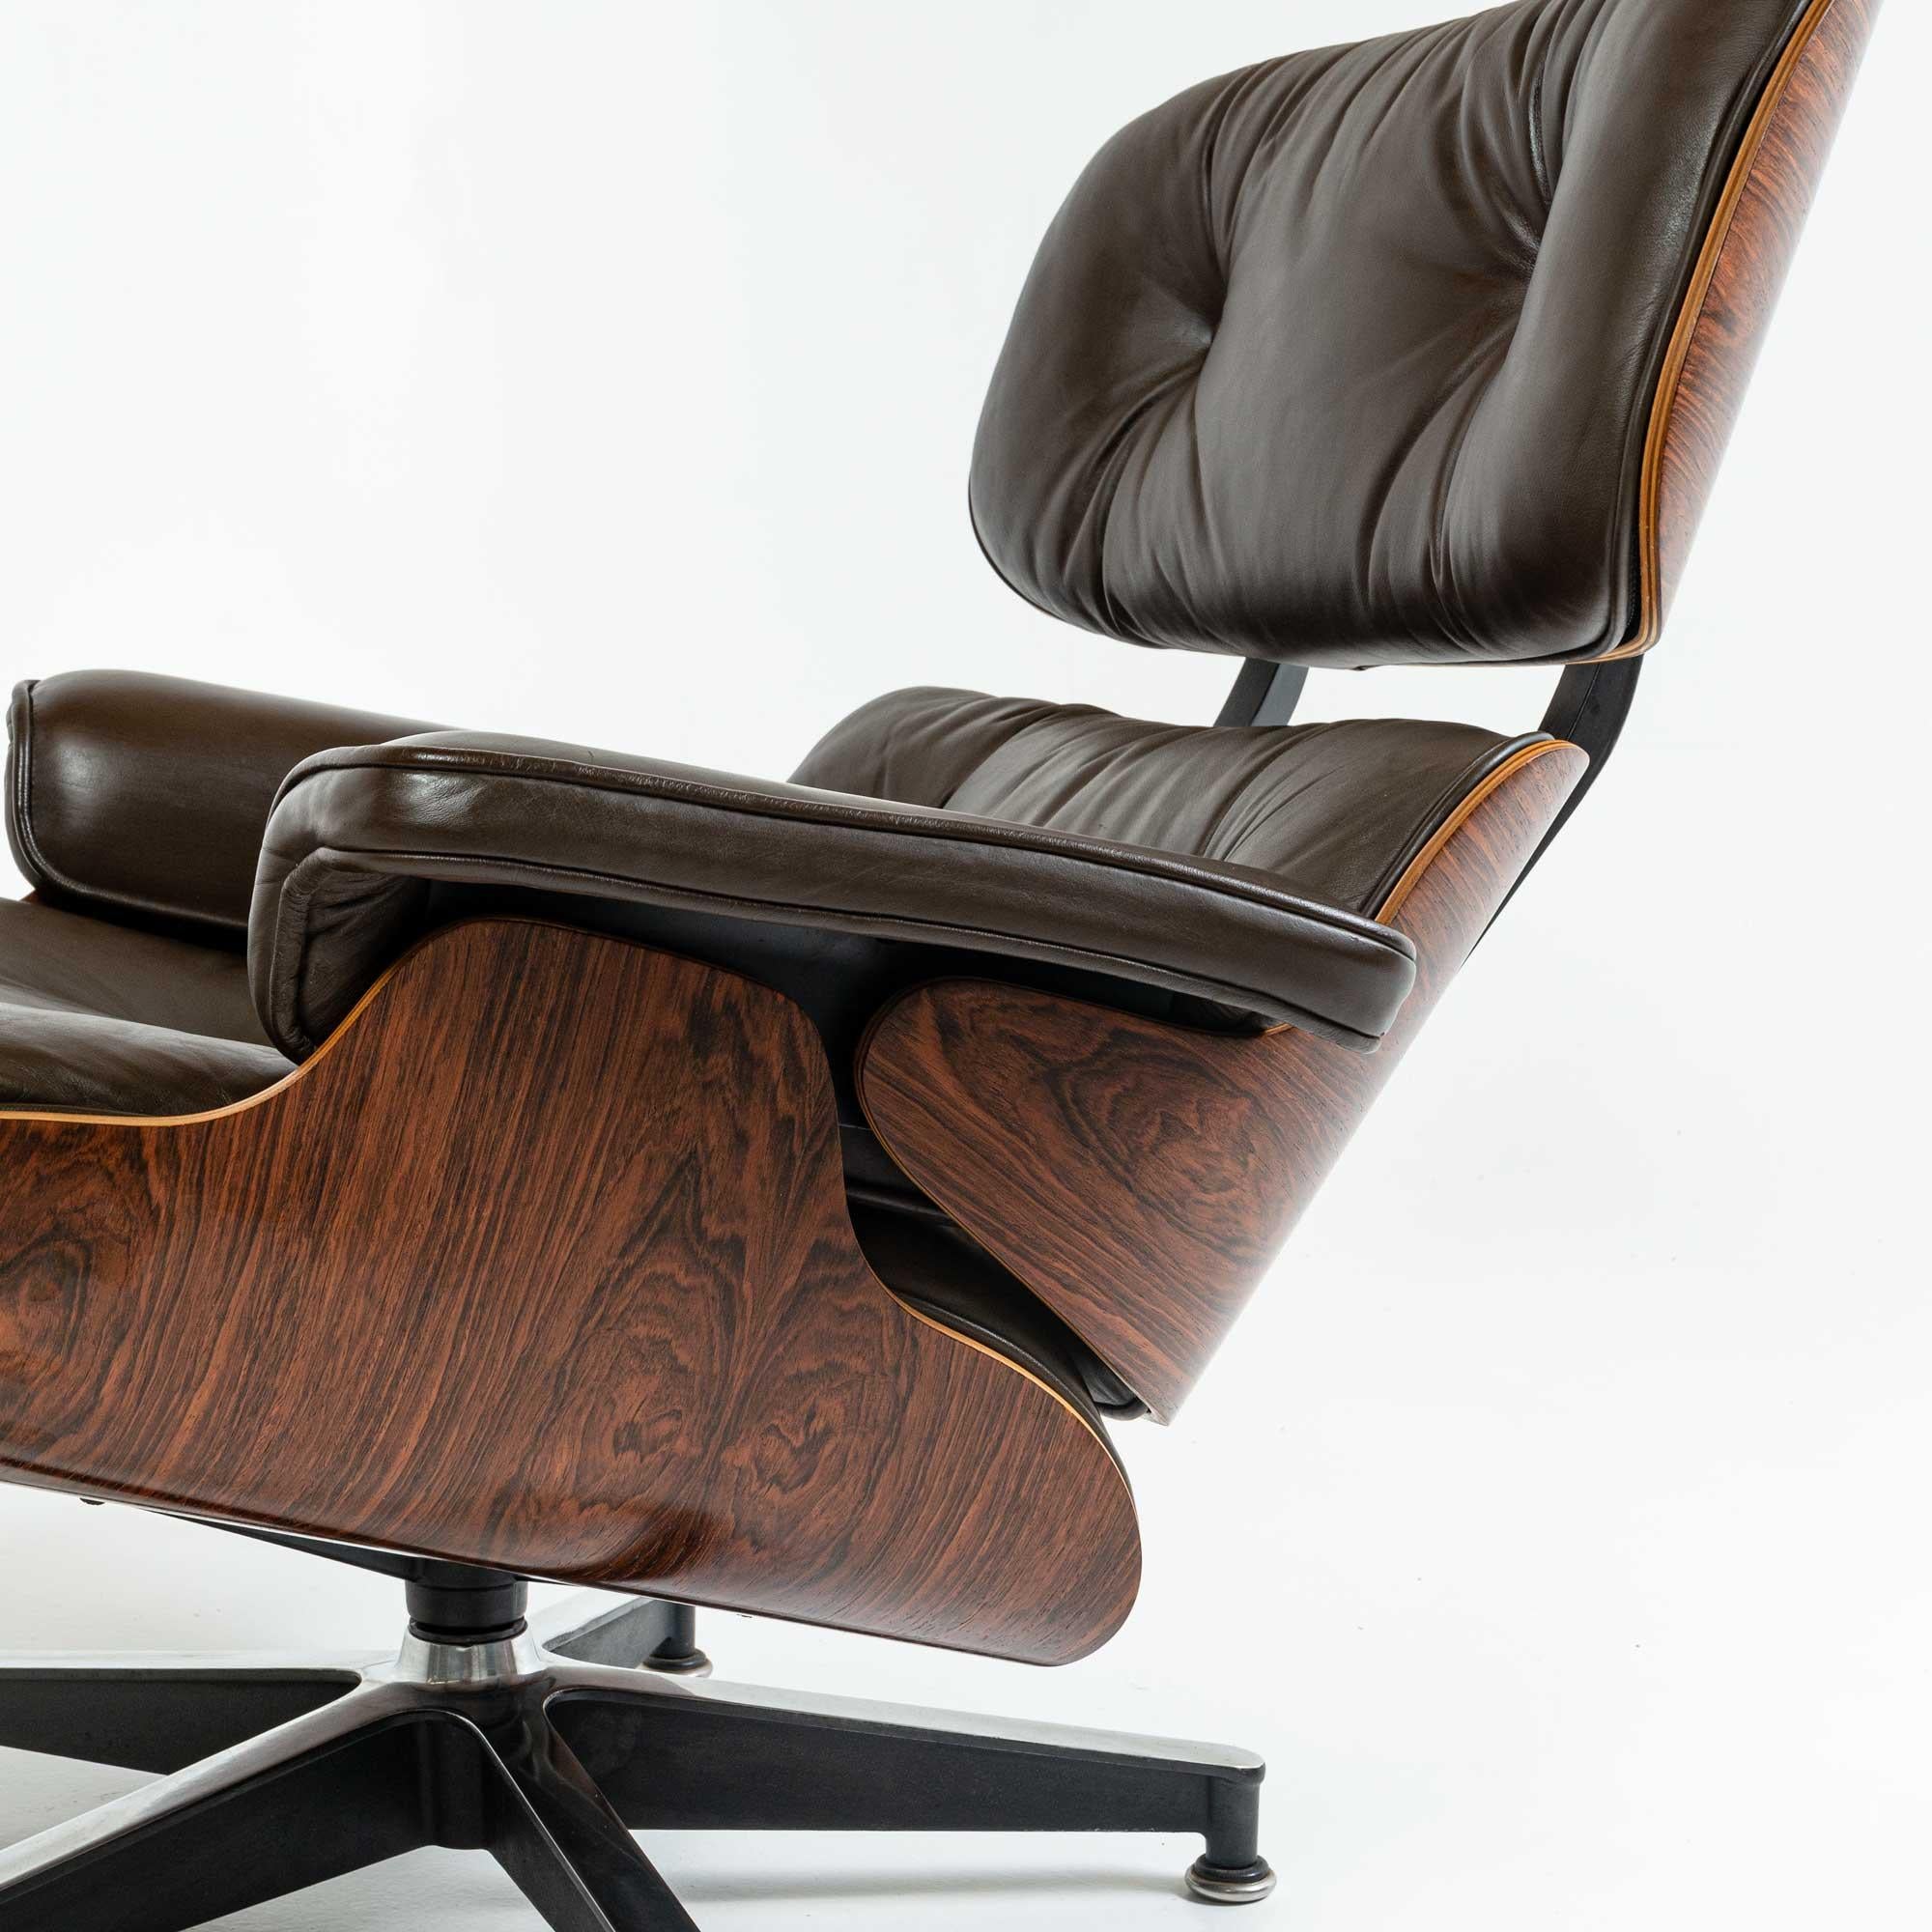 Fin du 20e siècle Chaise longue Eames 3rd Gen 670-671 en cuir chocolat d'origine en vente